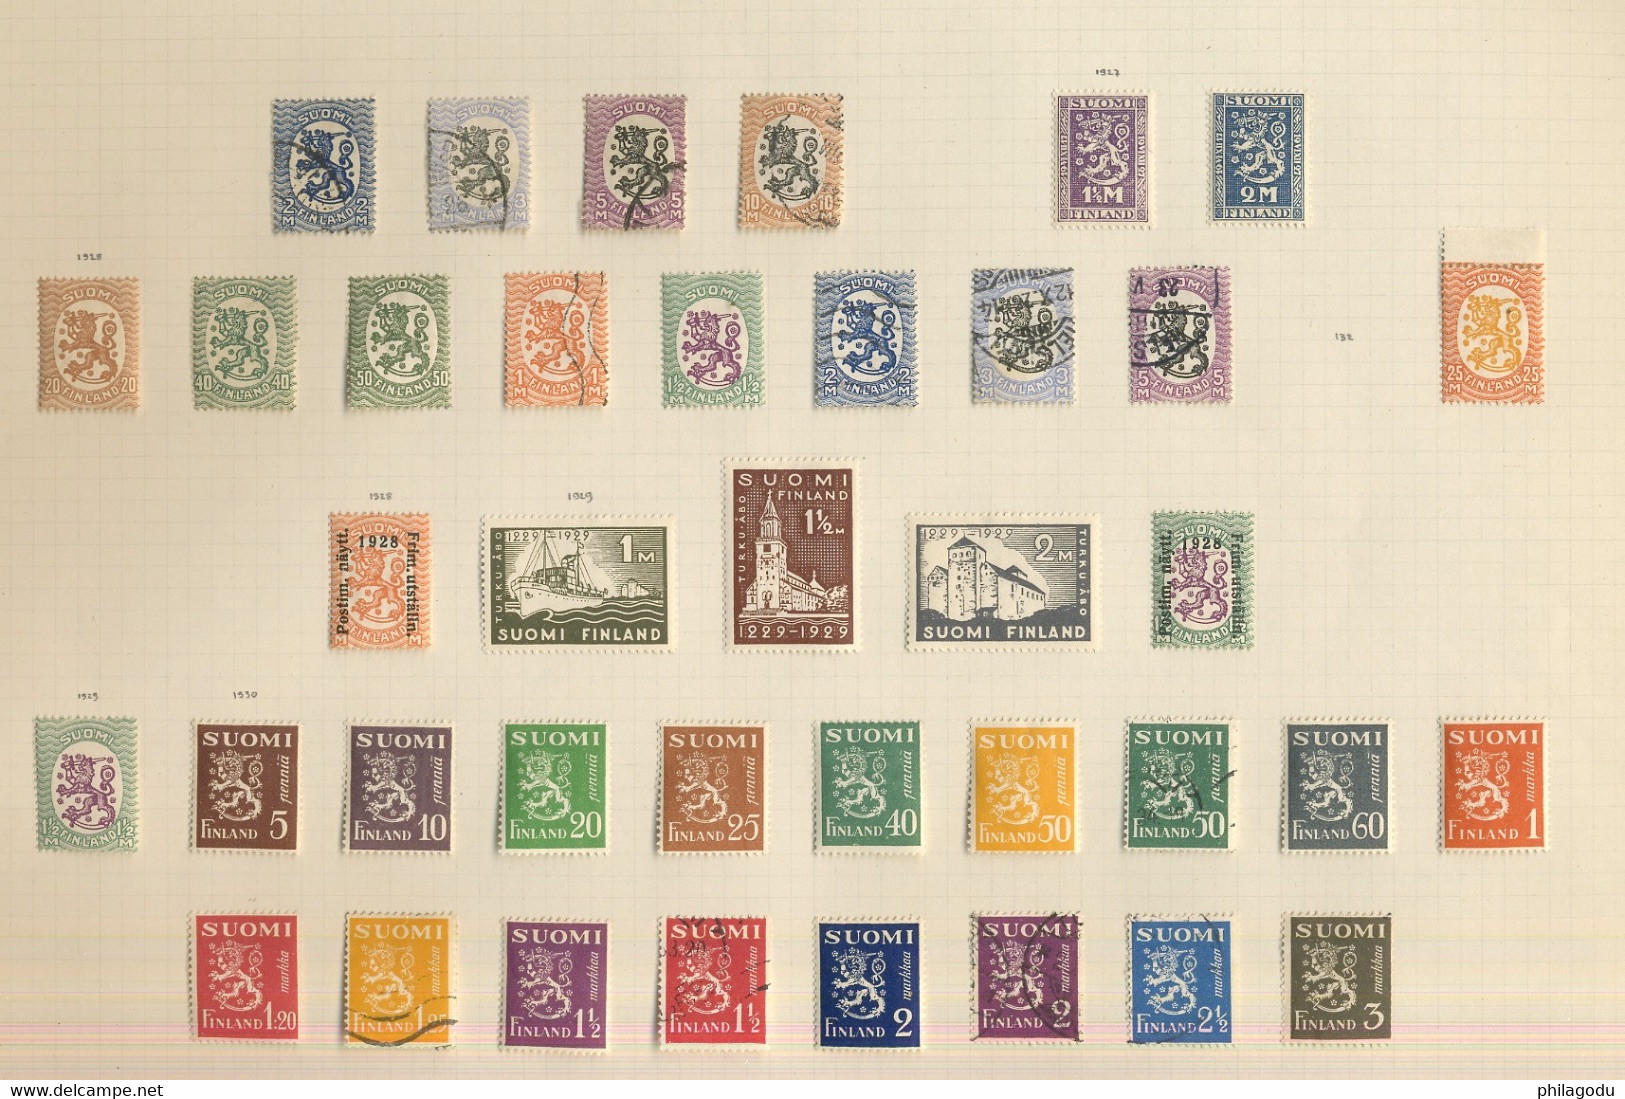 collection République jusque 1942.  Yvert 700-euros. belle qualité *. mostly mint L.H. un bon départ